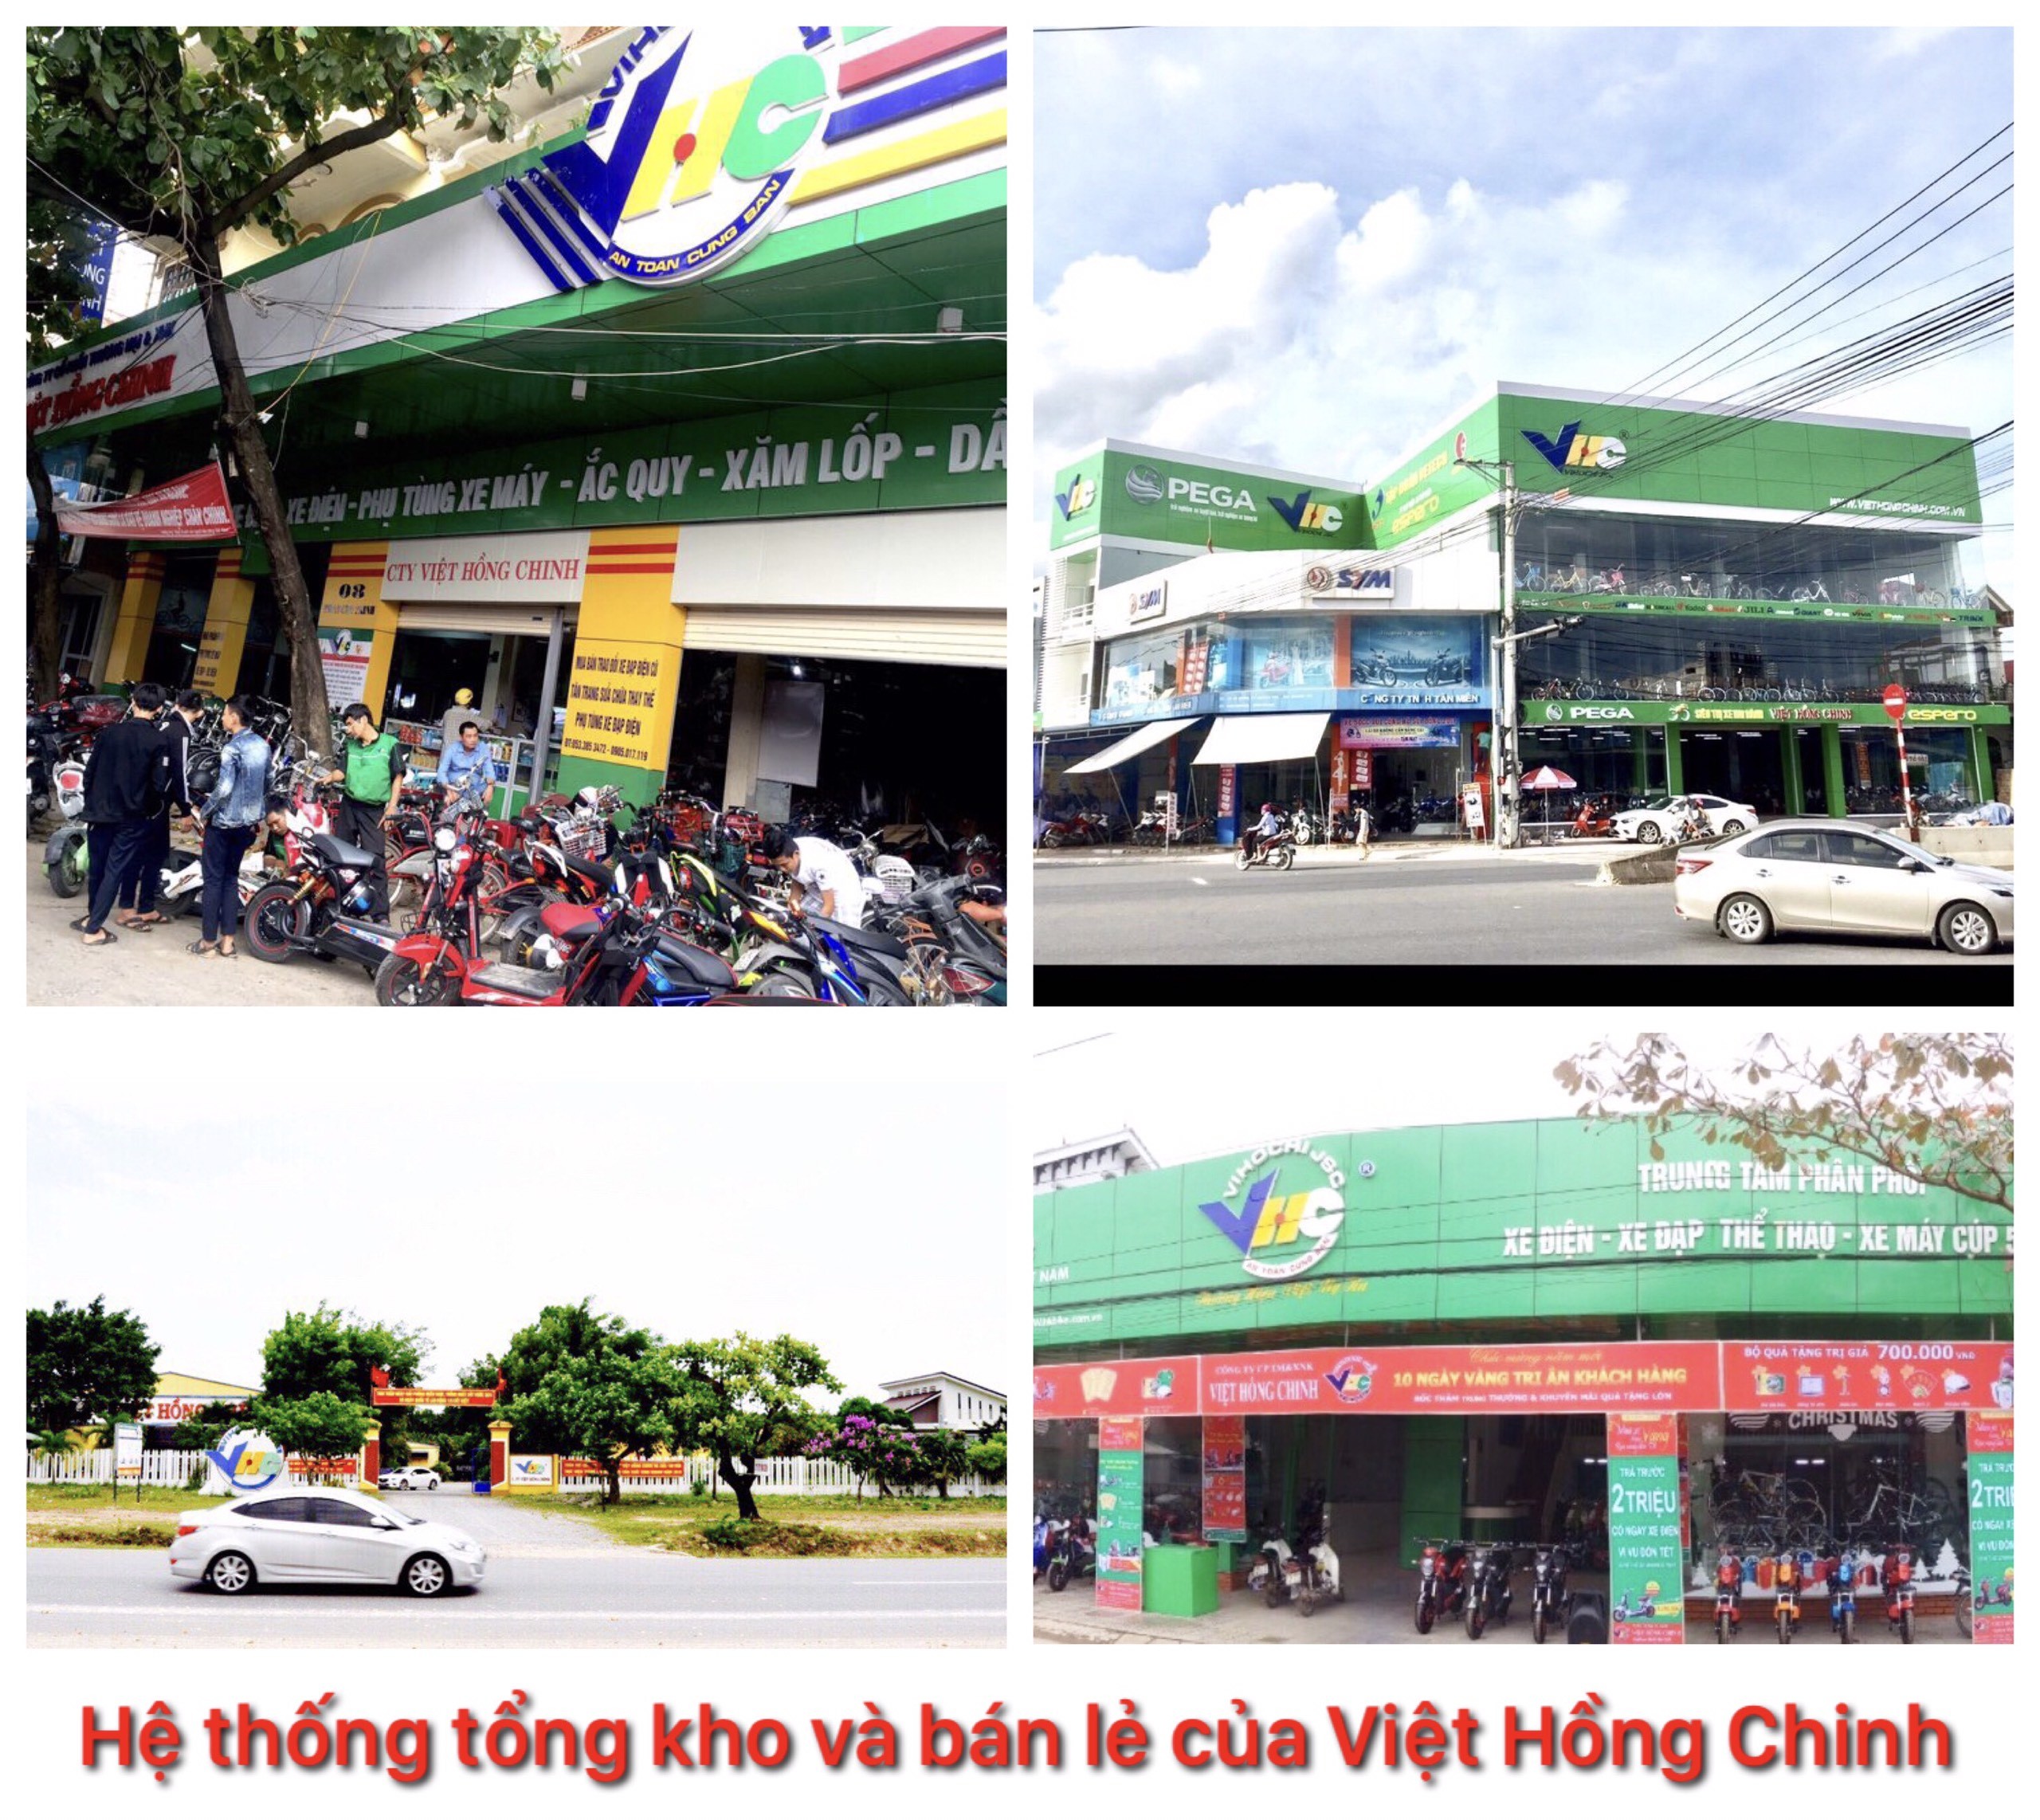 Doanh nghiệp "Việt Hồng Chinh" và cái duyên với "xe không khói”